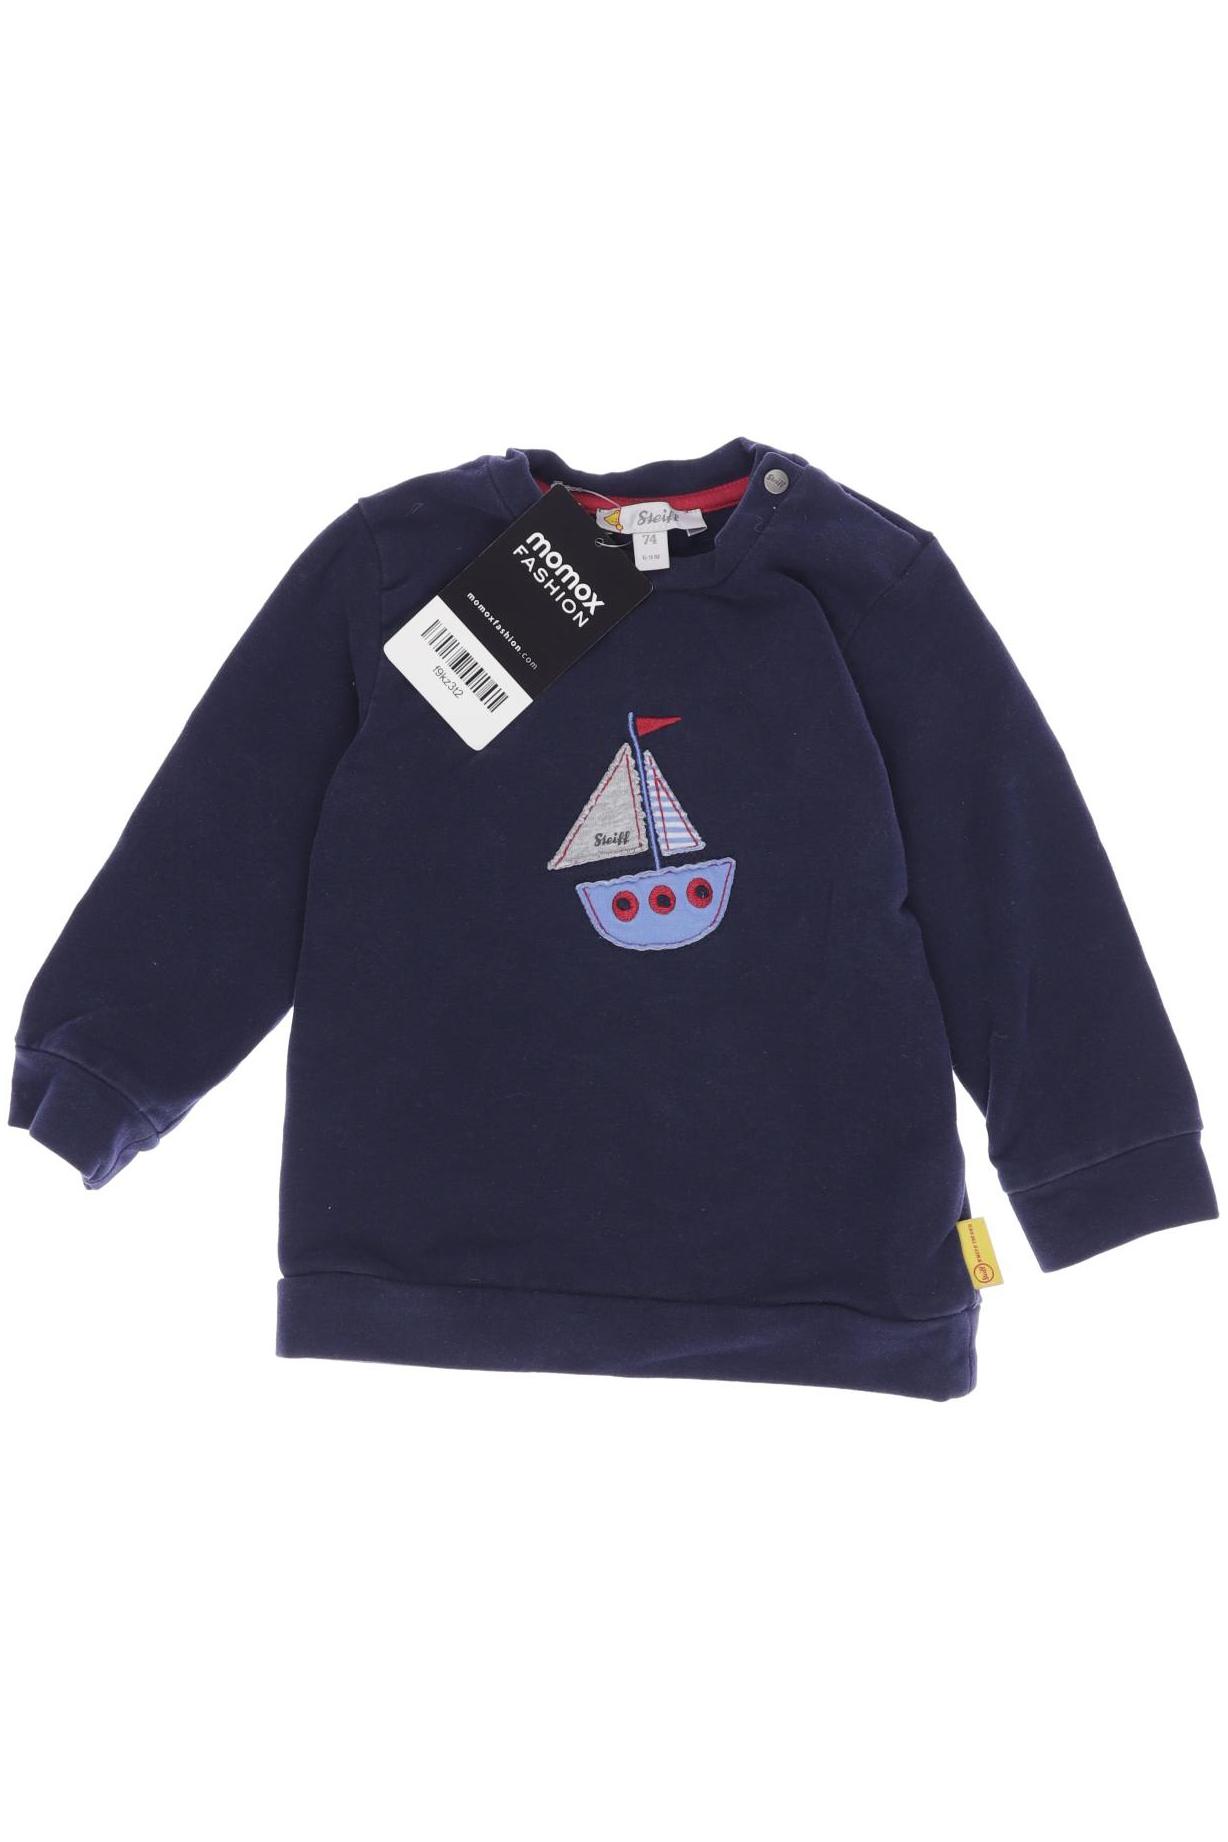 Steiff Damen Hoodies & Sweater, marineblau, Gr. 74 von Steiff